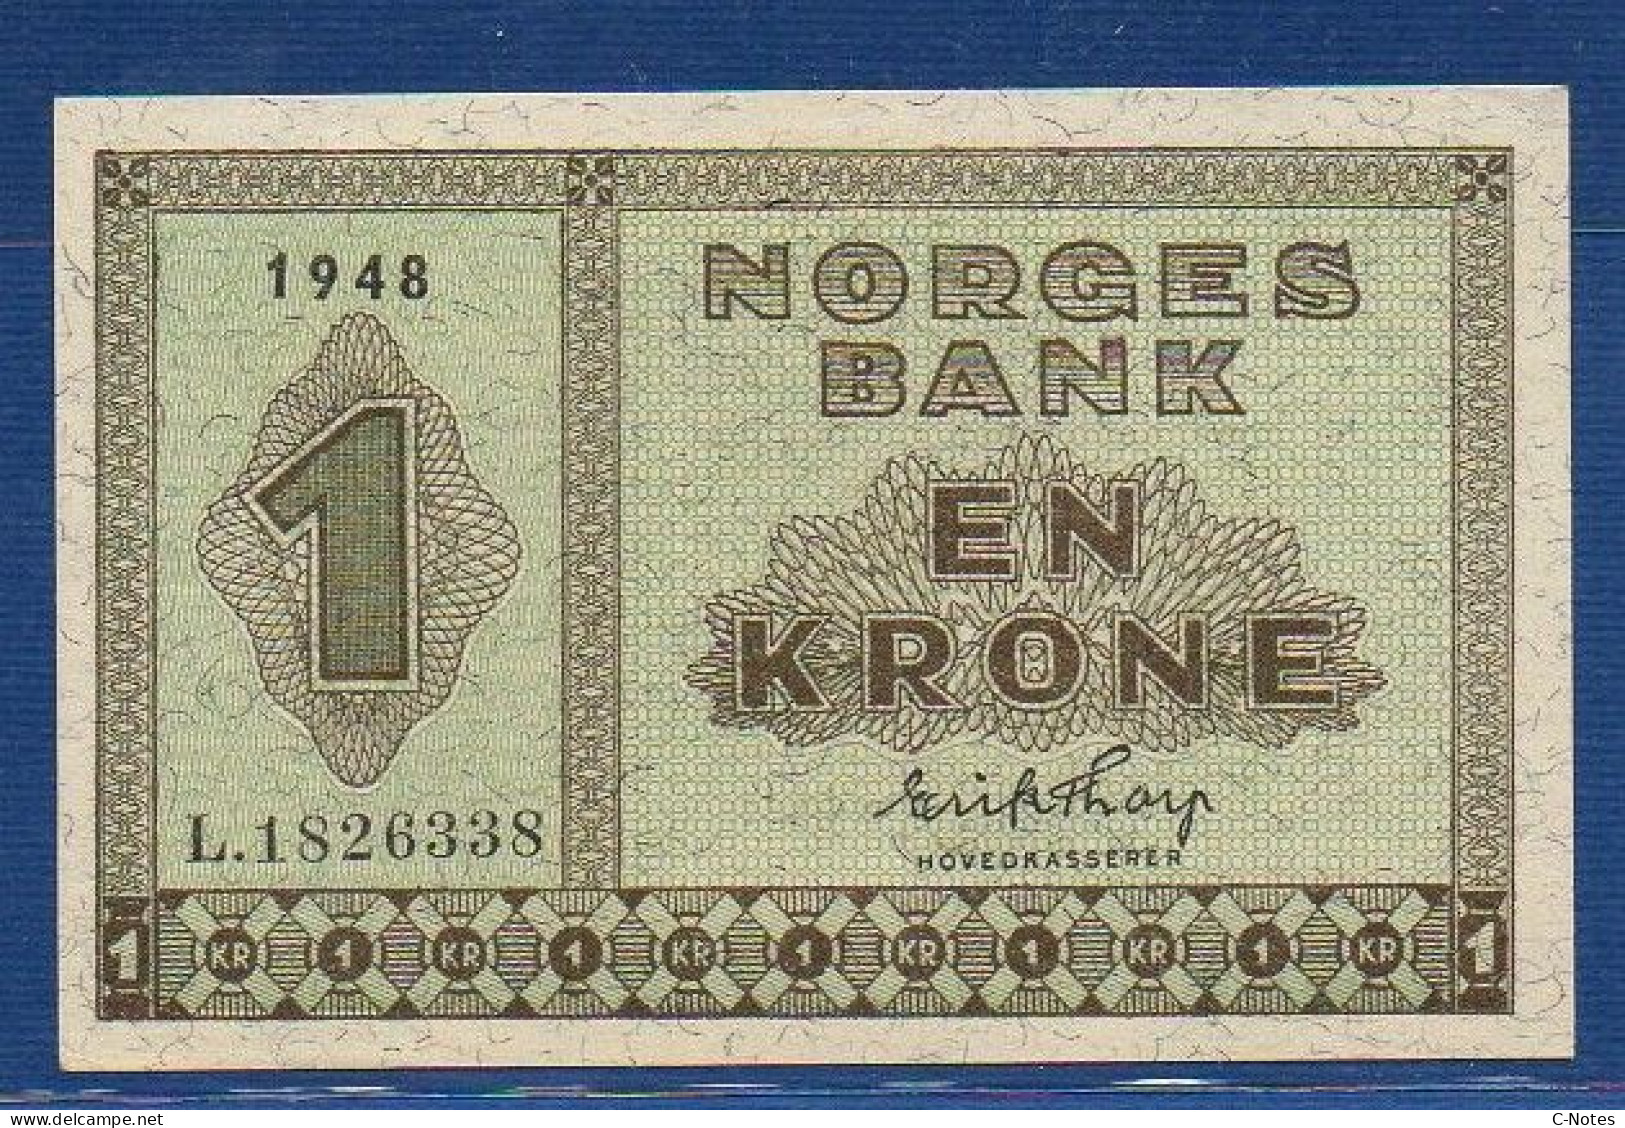 NORWAY - P.15b – 1 Krone 1948 XF/AU, S/n L.1826338 - Norway